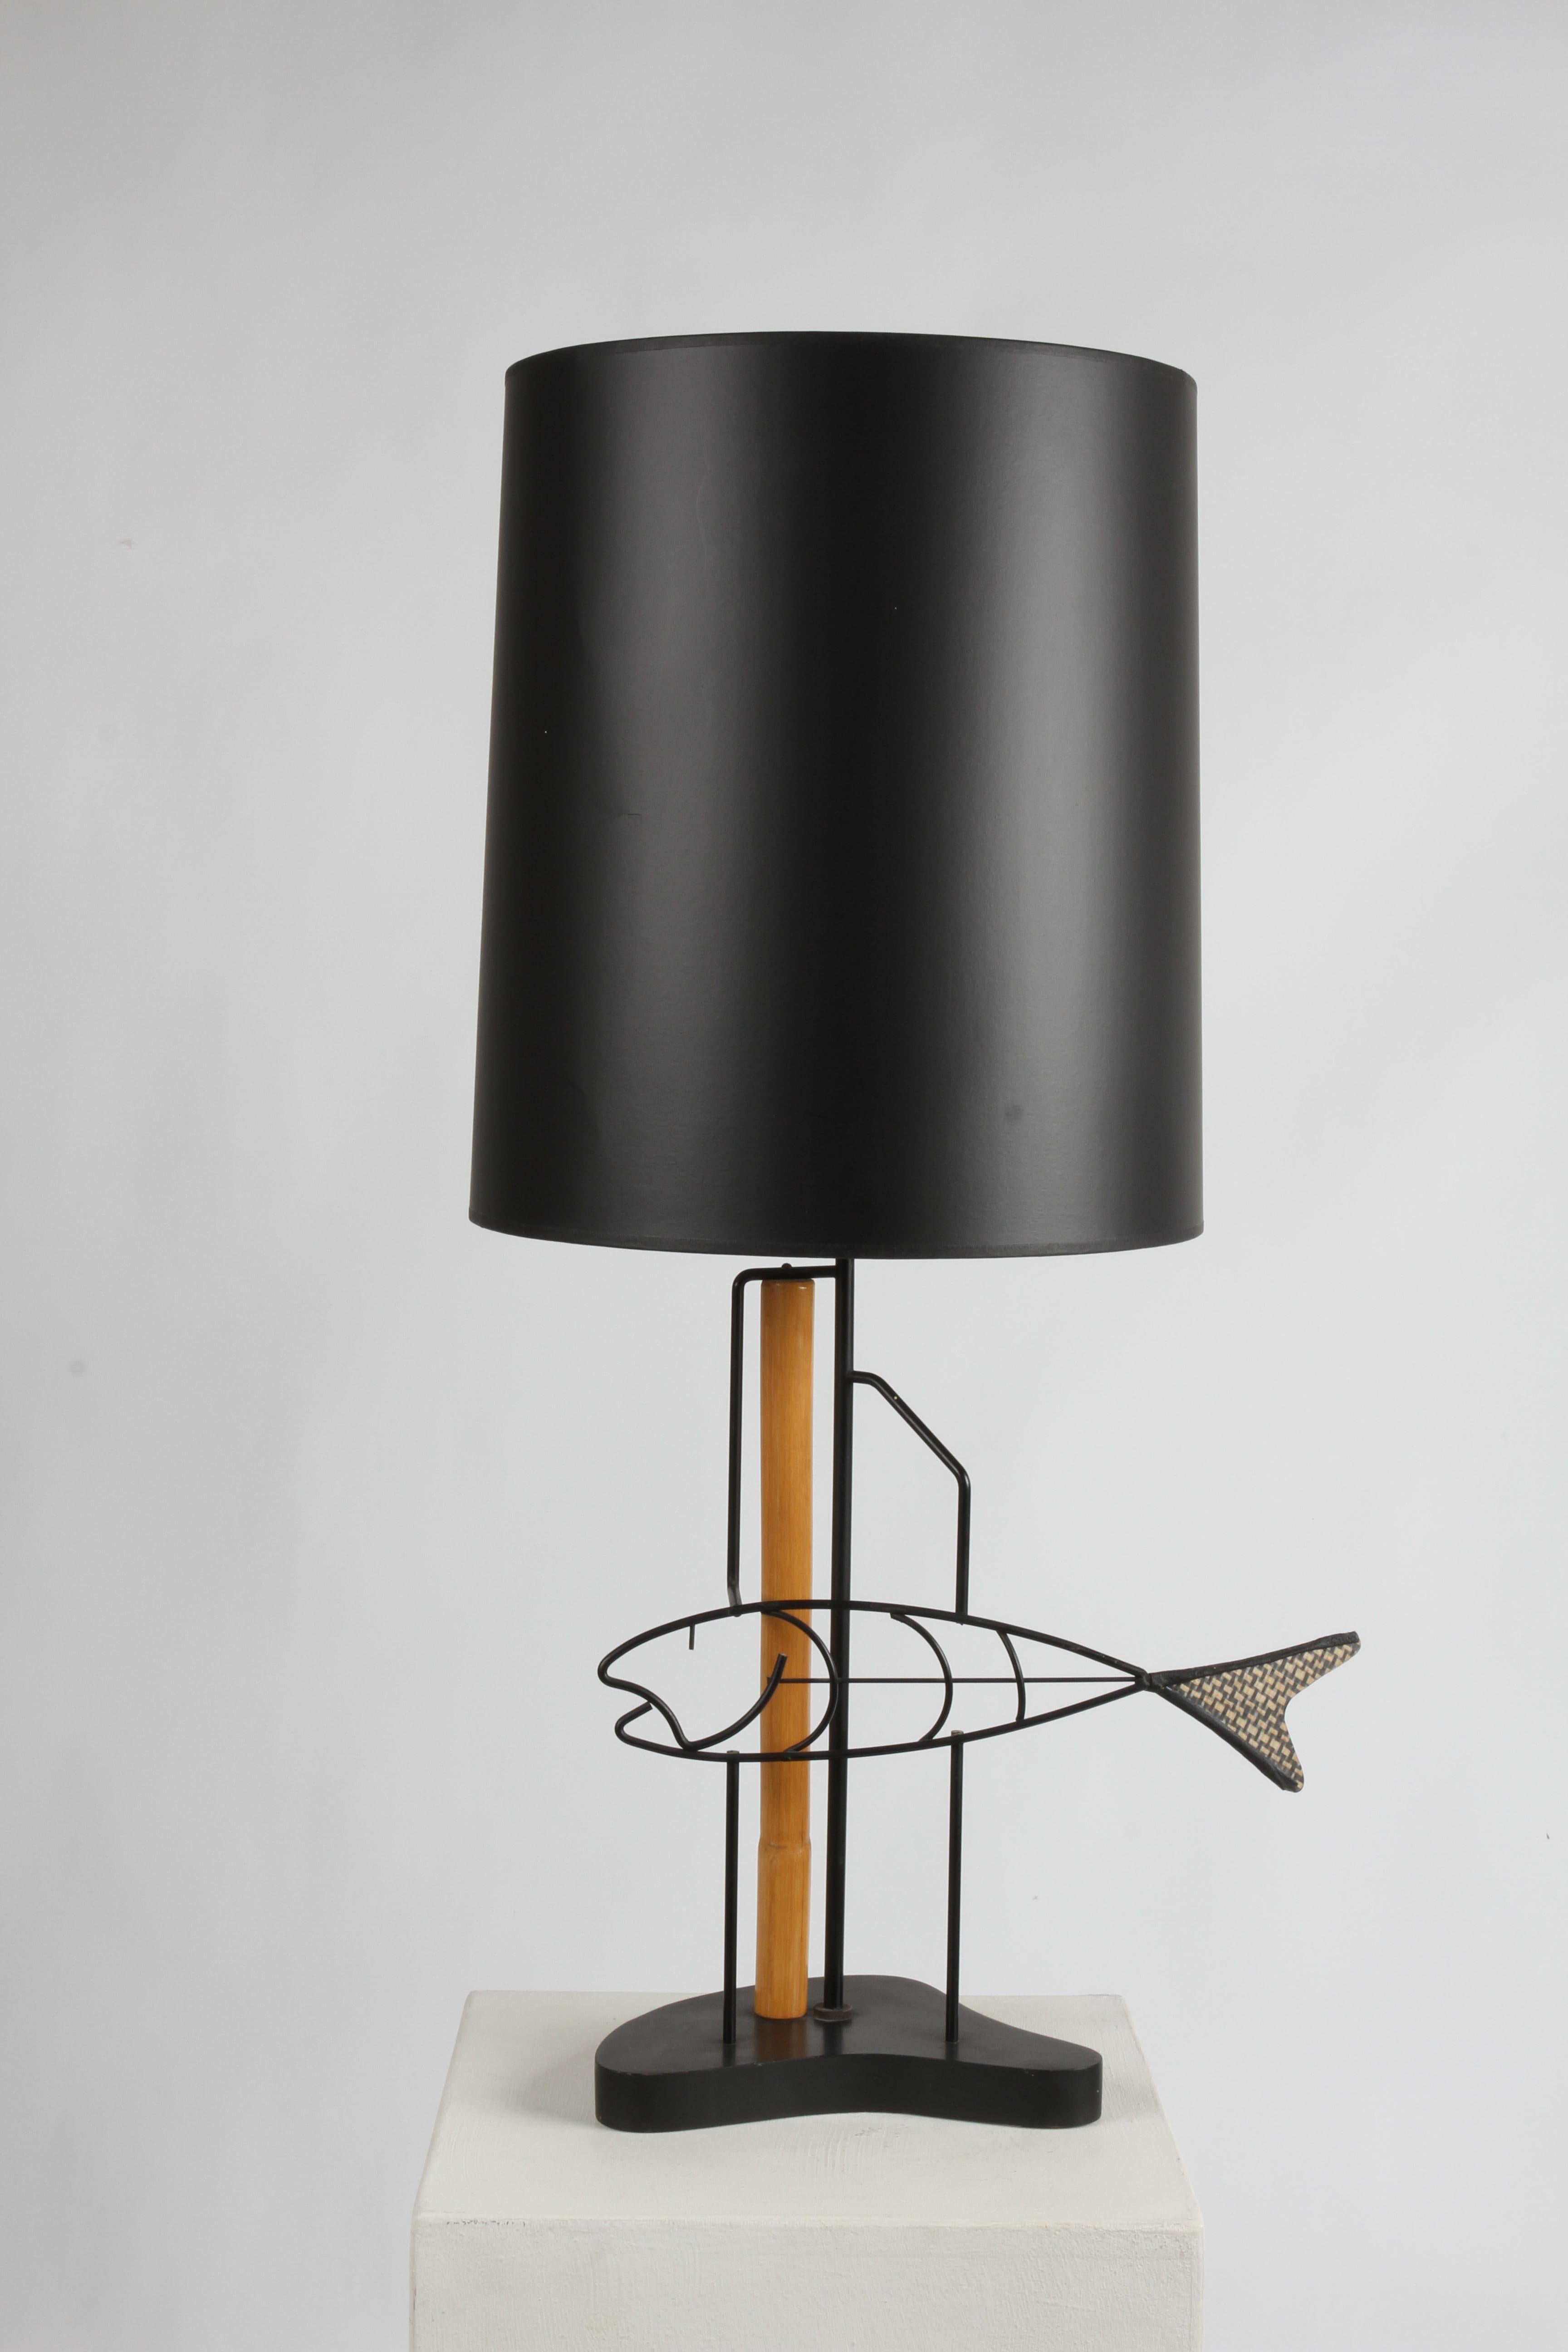 Mid-Century Modern Frederic Weinberg Stil schwarz schmiedeeisernen Fisch-Lampe, mit Fiberglas Schwanz, der Schuppen ähnelt, mit Bambus-Unterstützung & endgültig auf Holz biomorphen Basis. Ohne schwarzen Farbton. Sehr guter Zustand, geringe